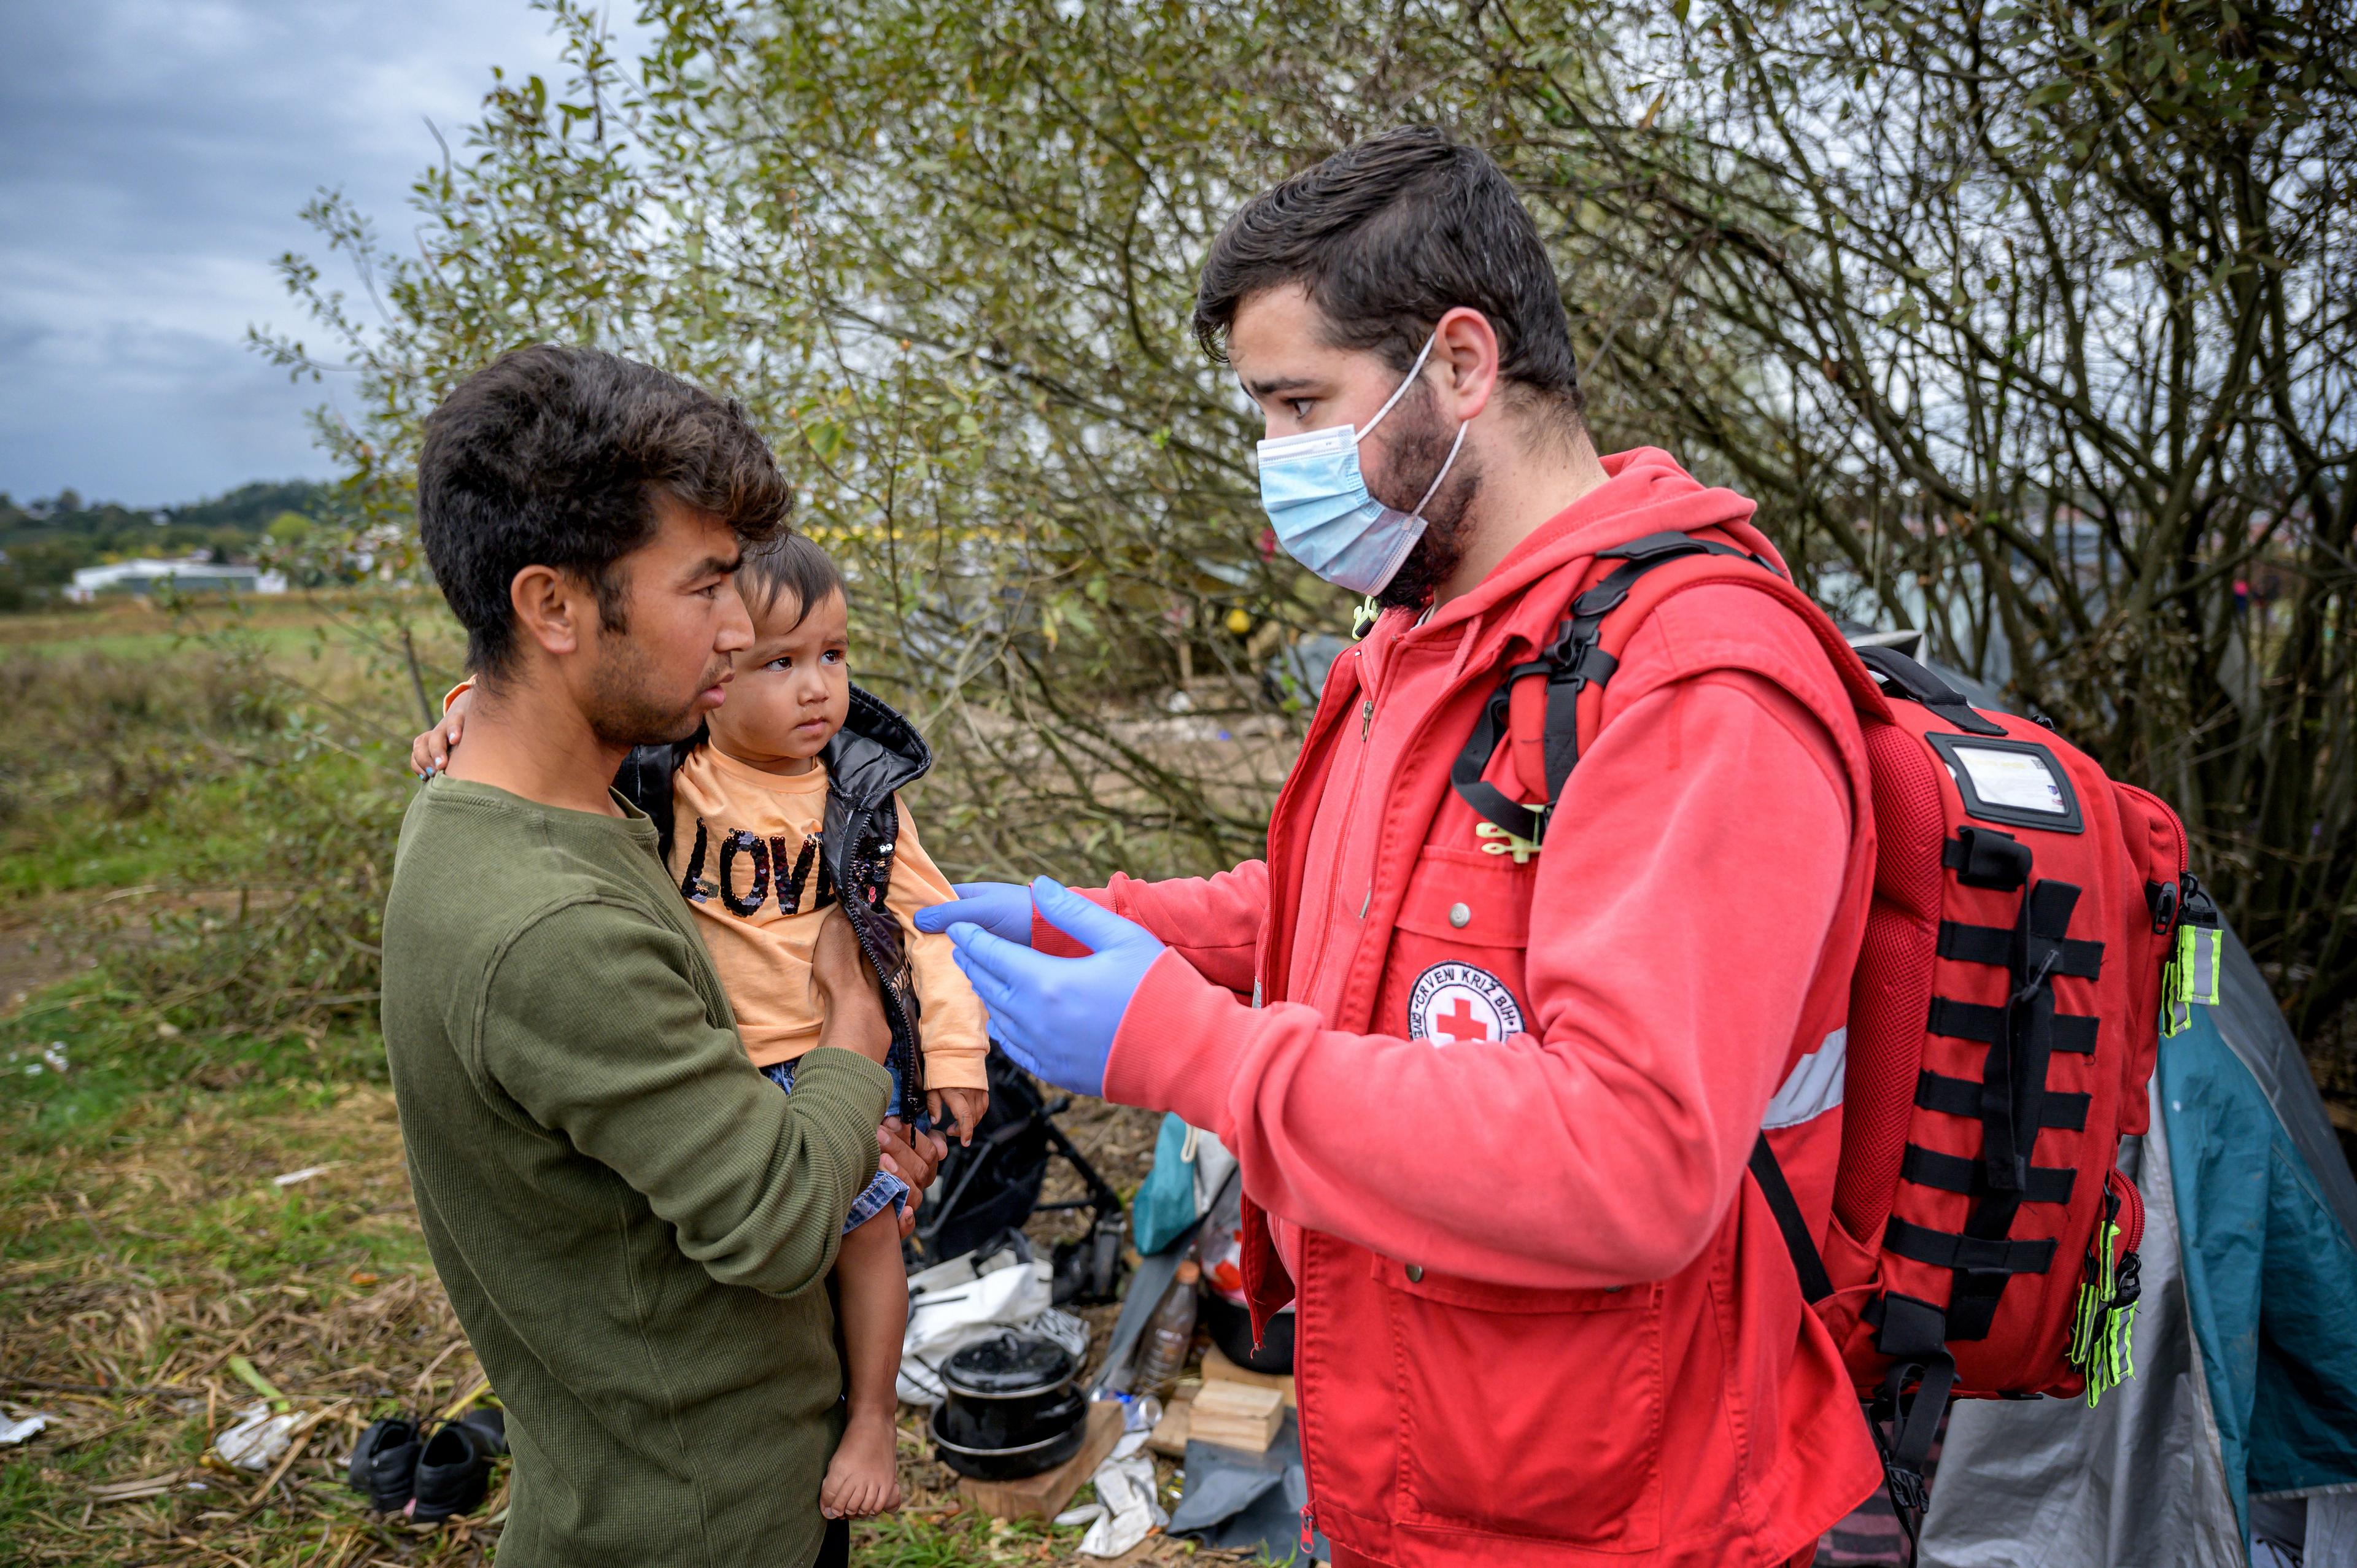 Ein Mann in einer Uniform des Roten Kreuzes nähert sich einem Vater und seinem Kind. Er scheint den Gesundheitszustand des Kindes zu kontrollieren.